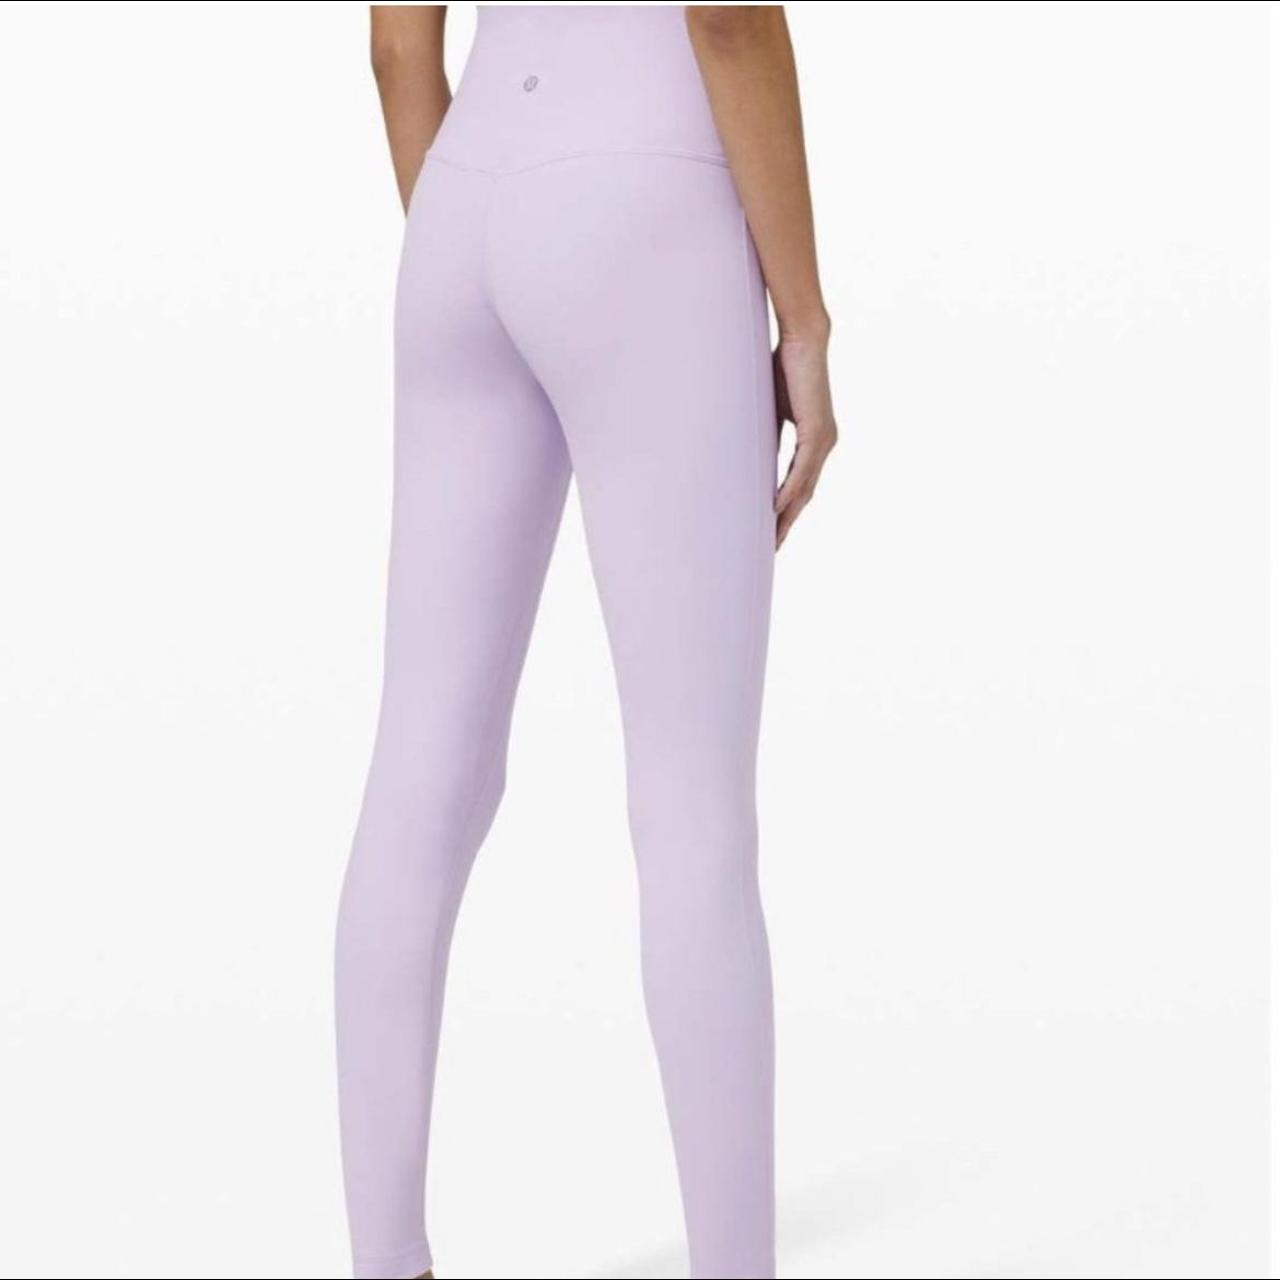 Lululemon align leggings size 0, 25” length in